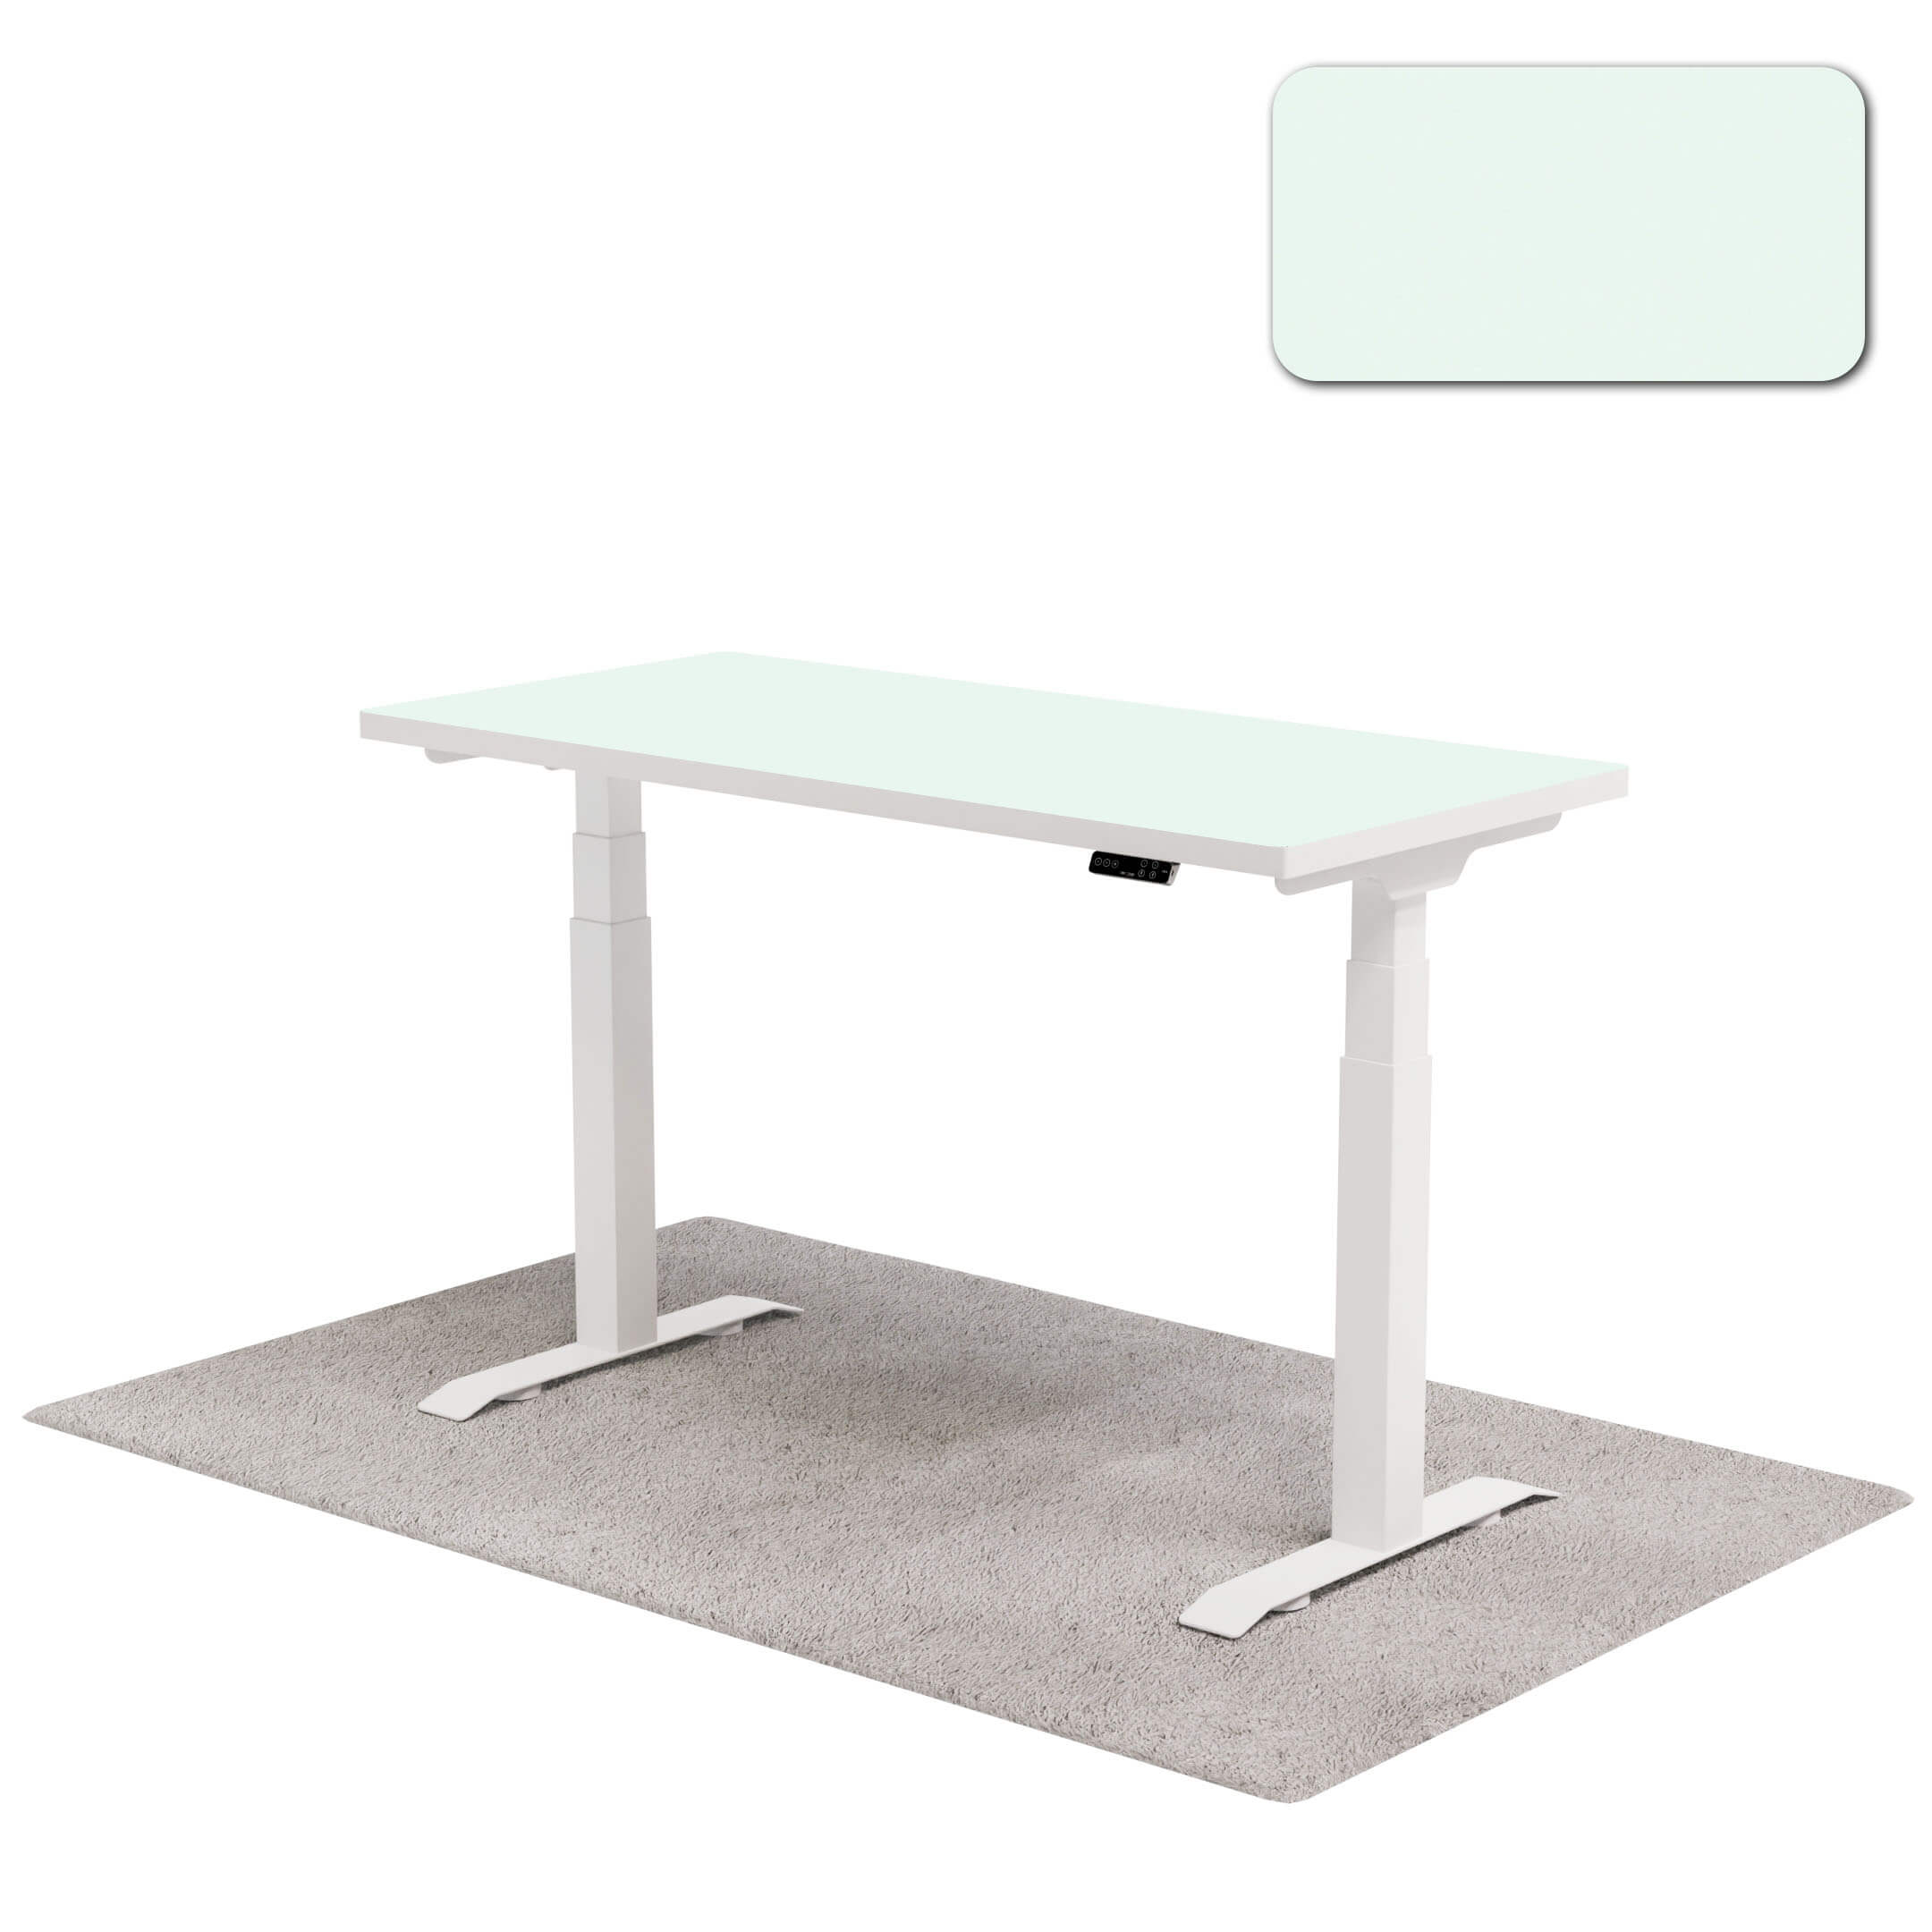 Lagoon white frame legs one desk kids series - GSC 286 → ODKS008 singapore standing desk dealer